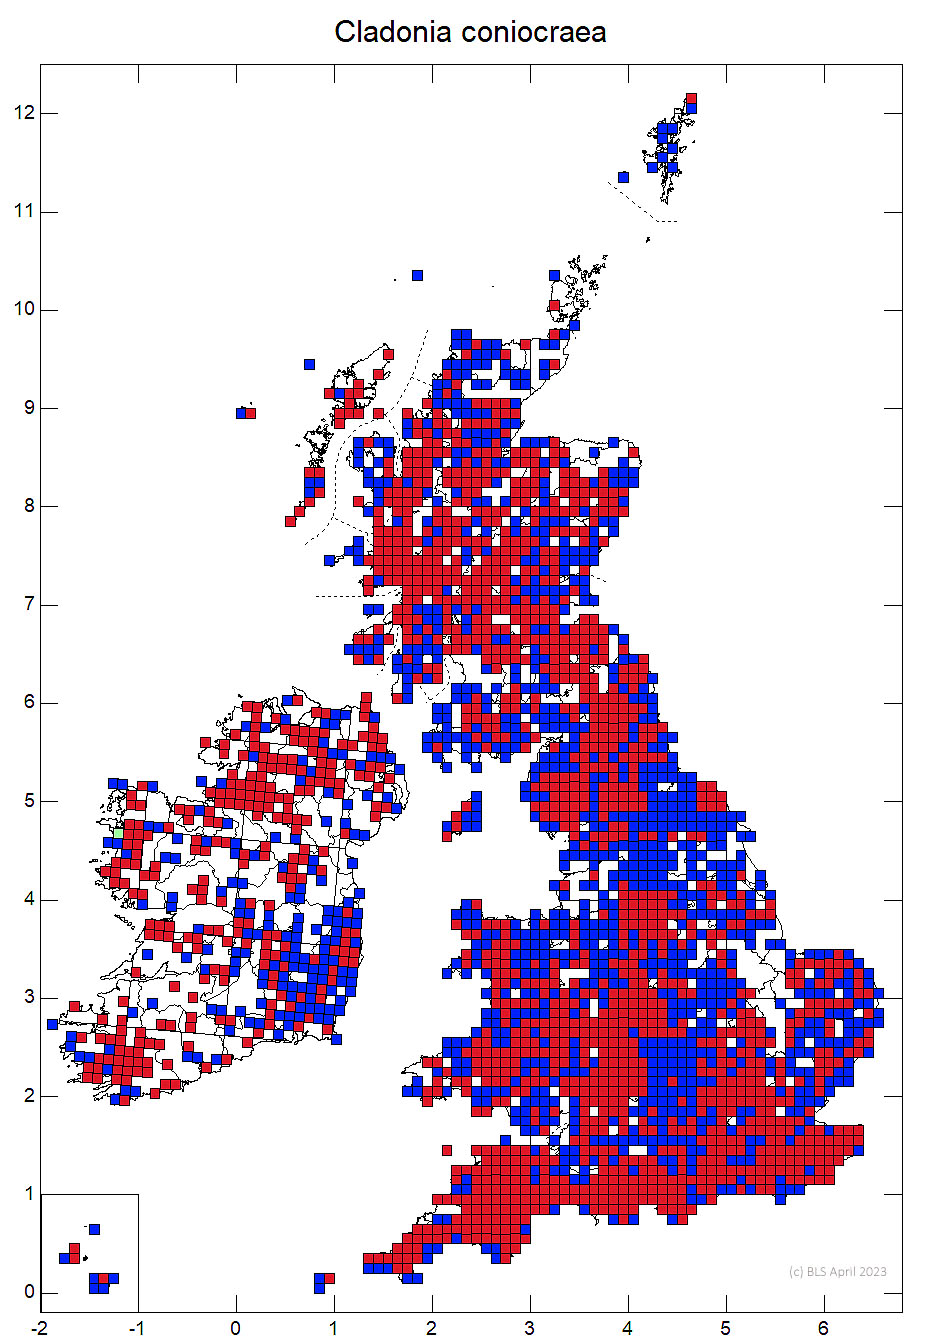 Cladonia coniocraea 10km sq distribution map